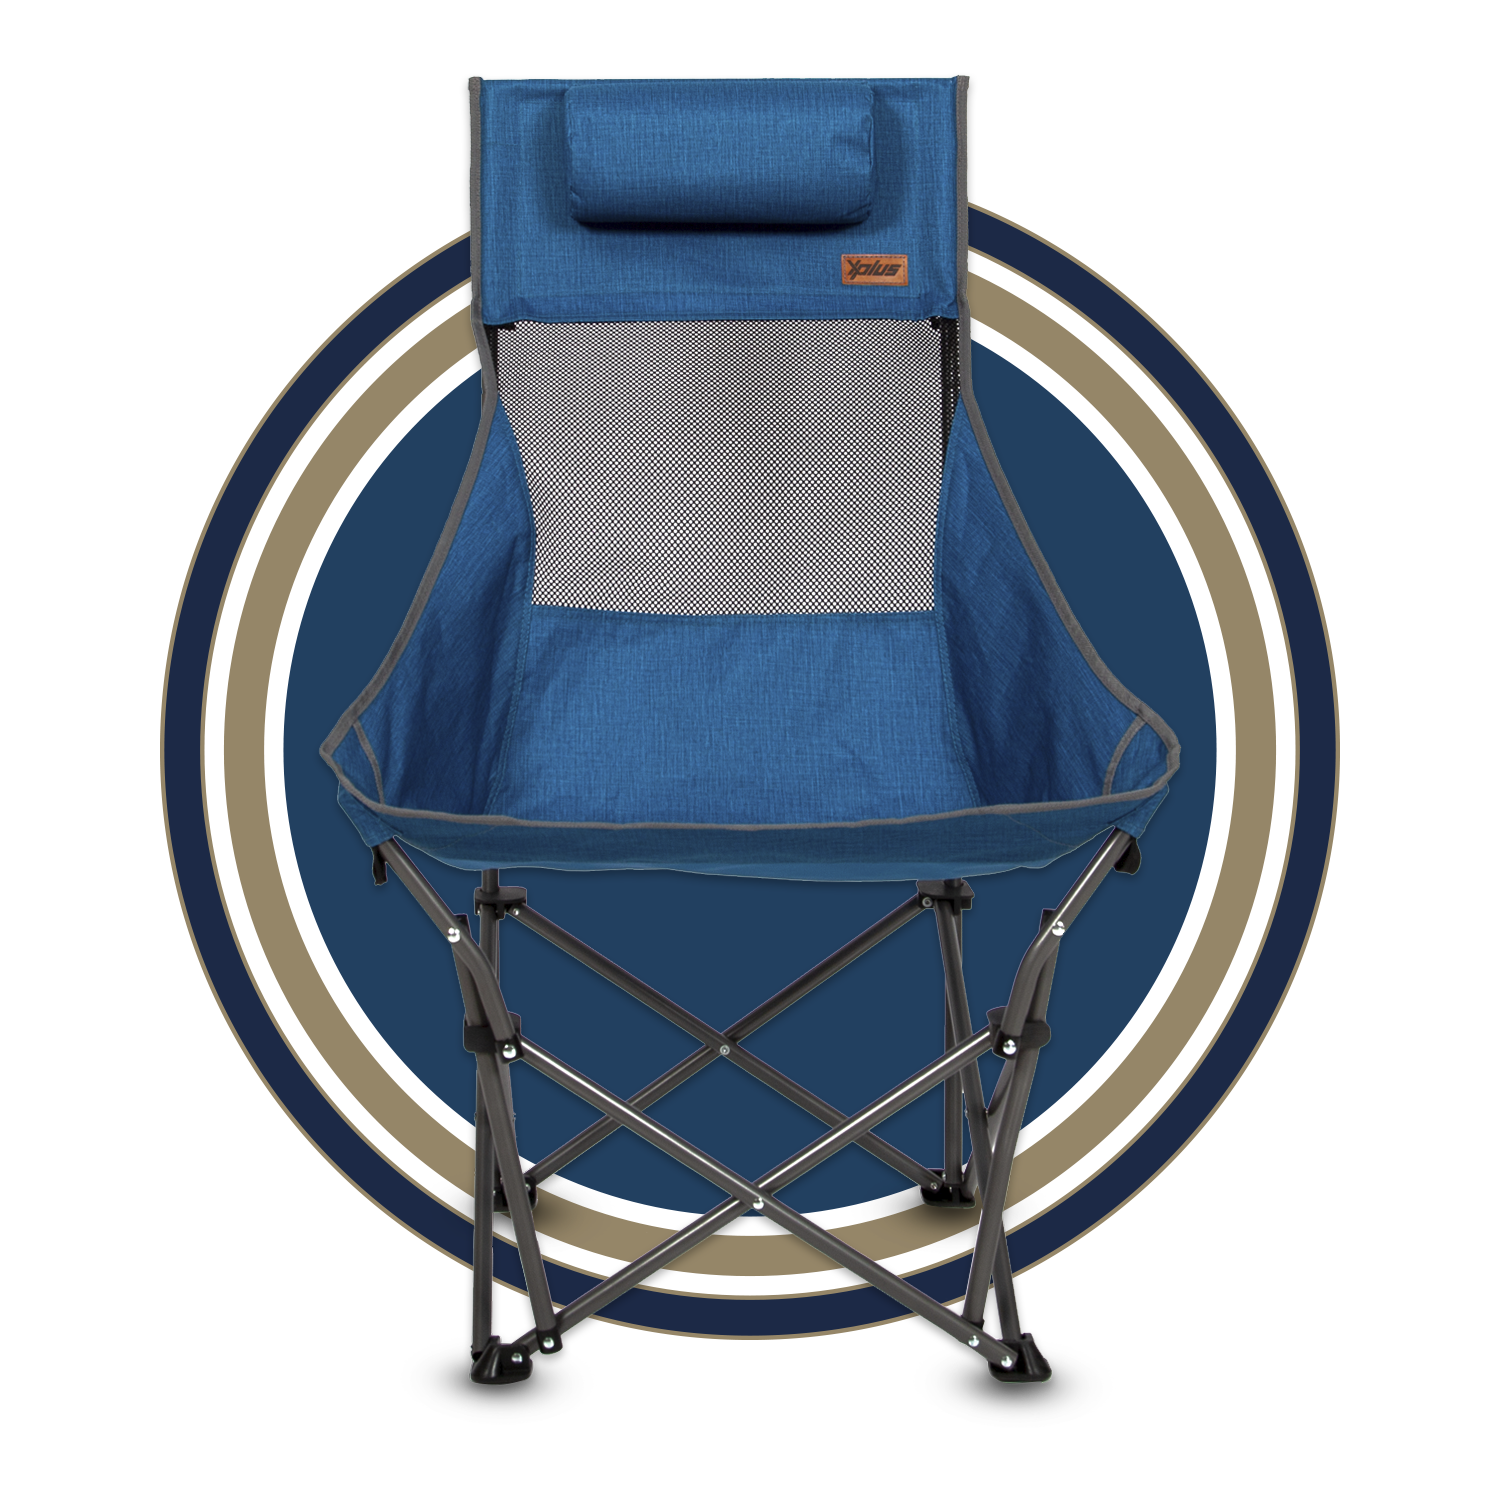  Mac Sports XP High-Back Folding Camping Chair